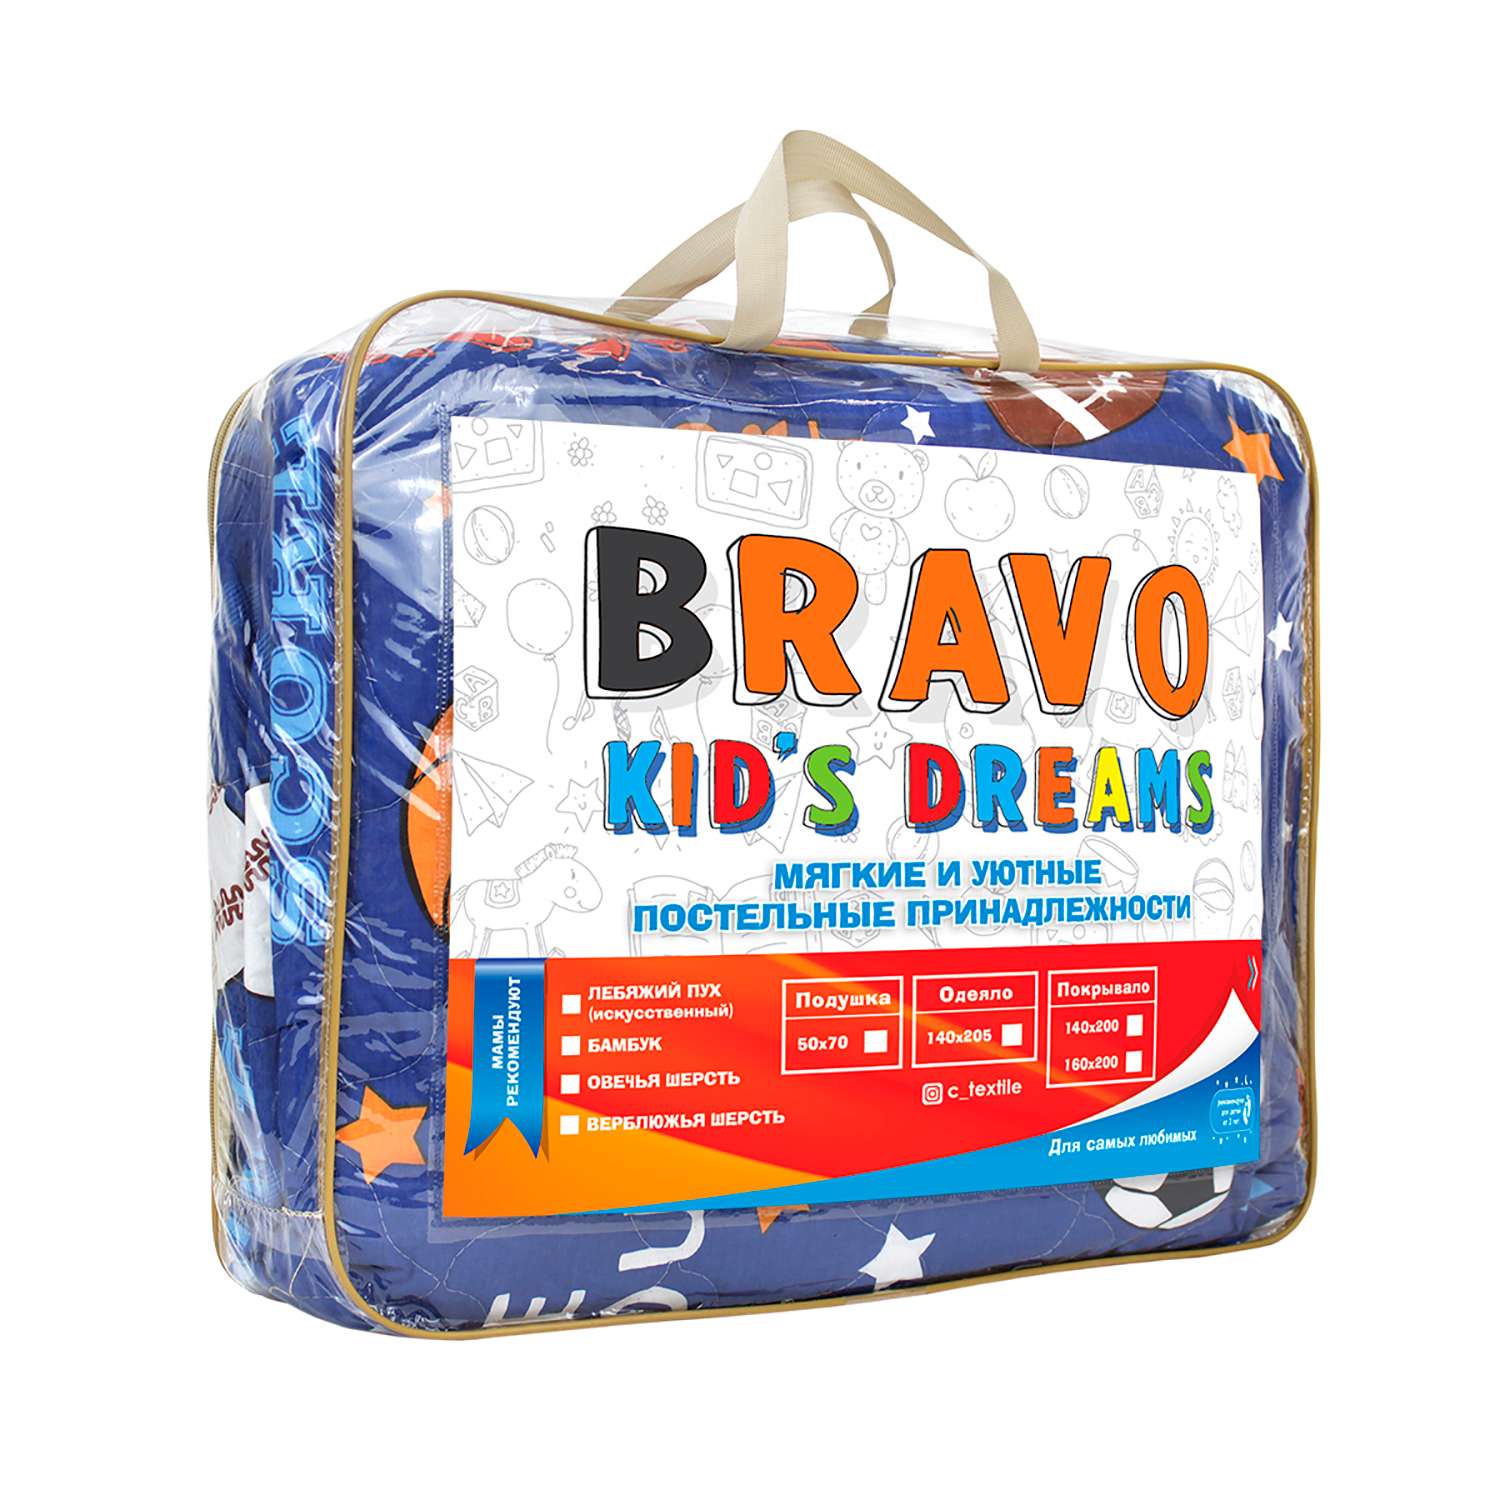 Покрывало BRAVO kids dreams Спорт 160х200 4434-1-4434а-1 - фото 4